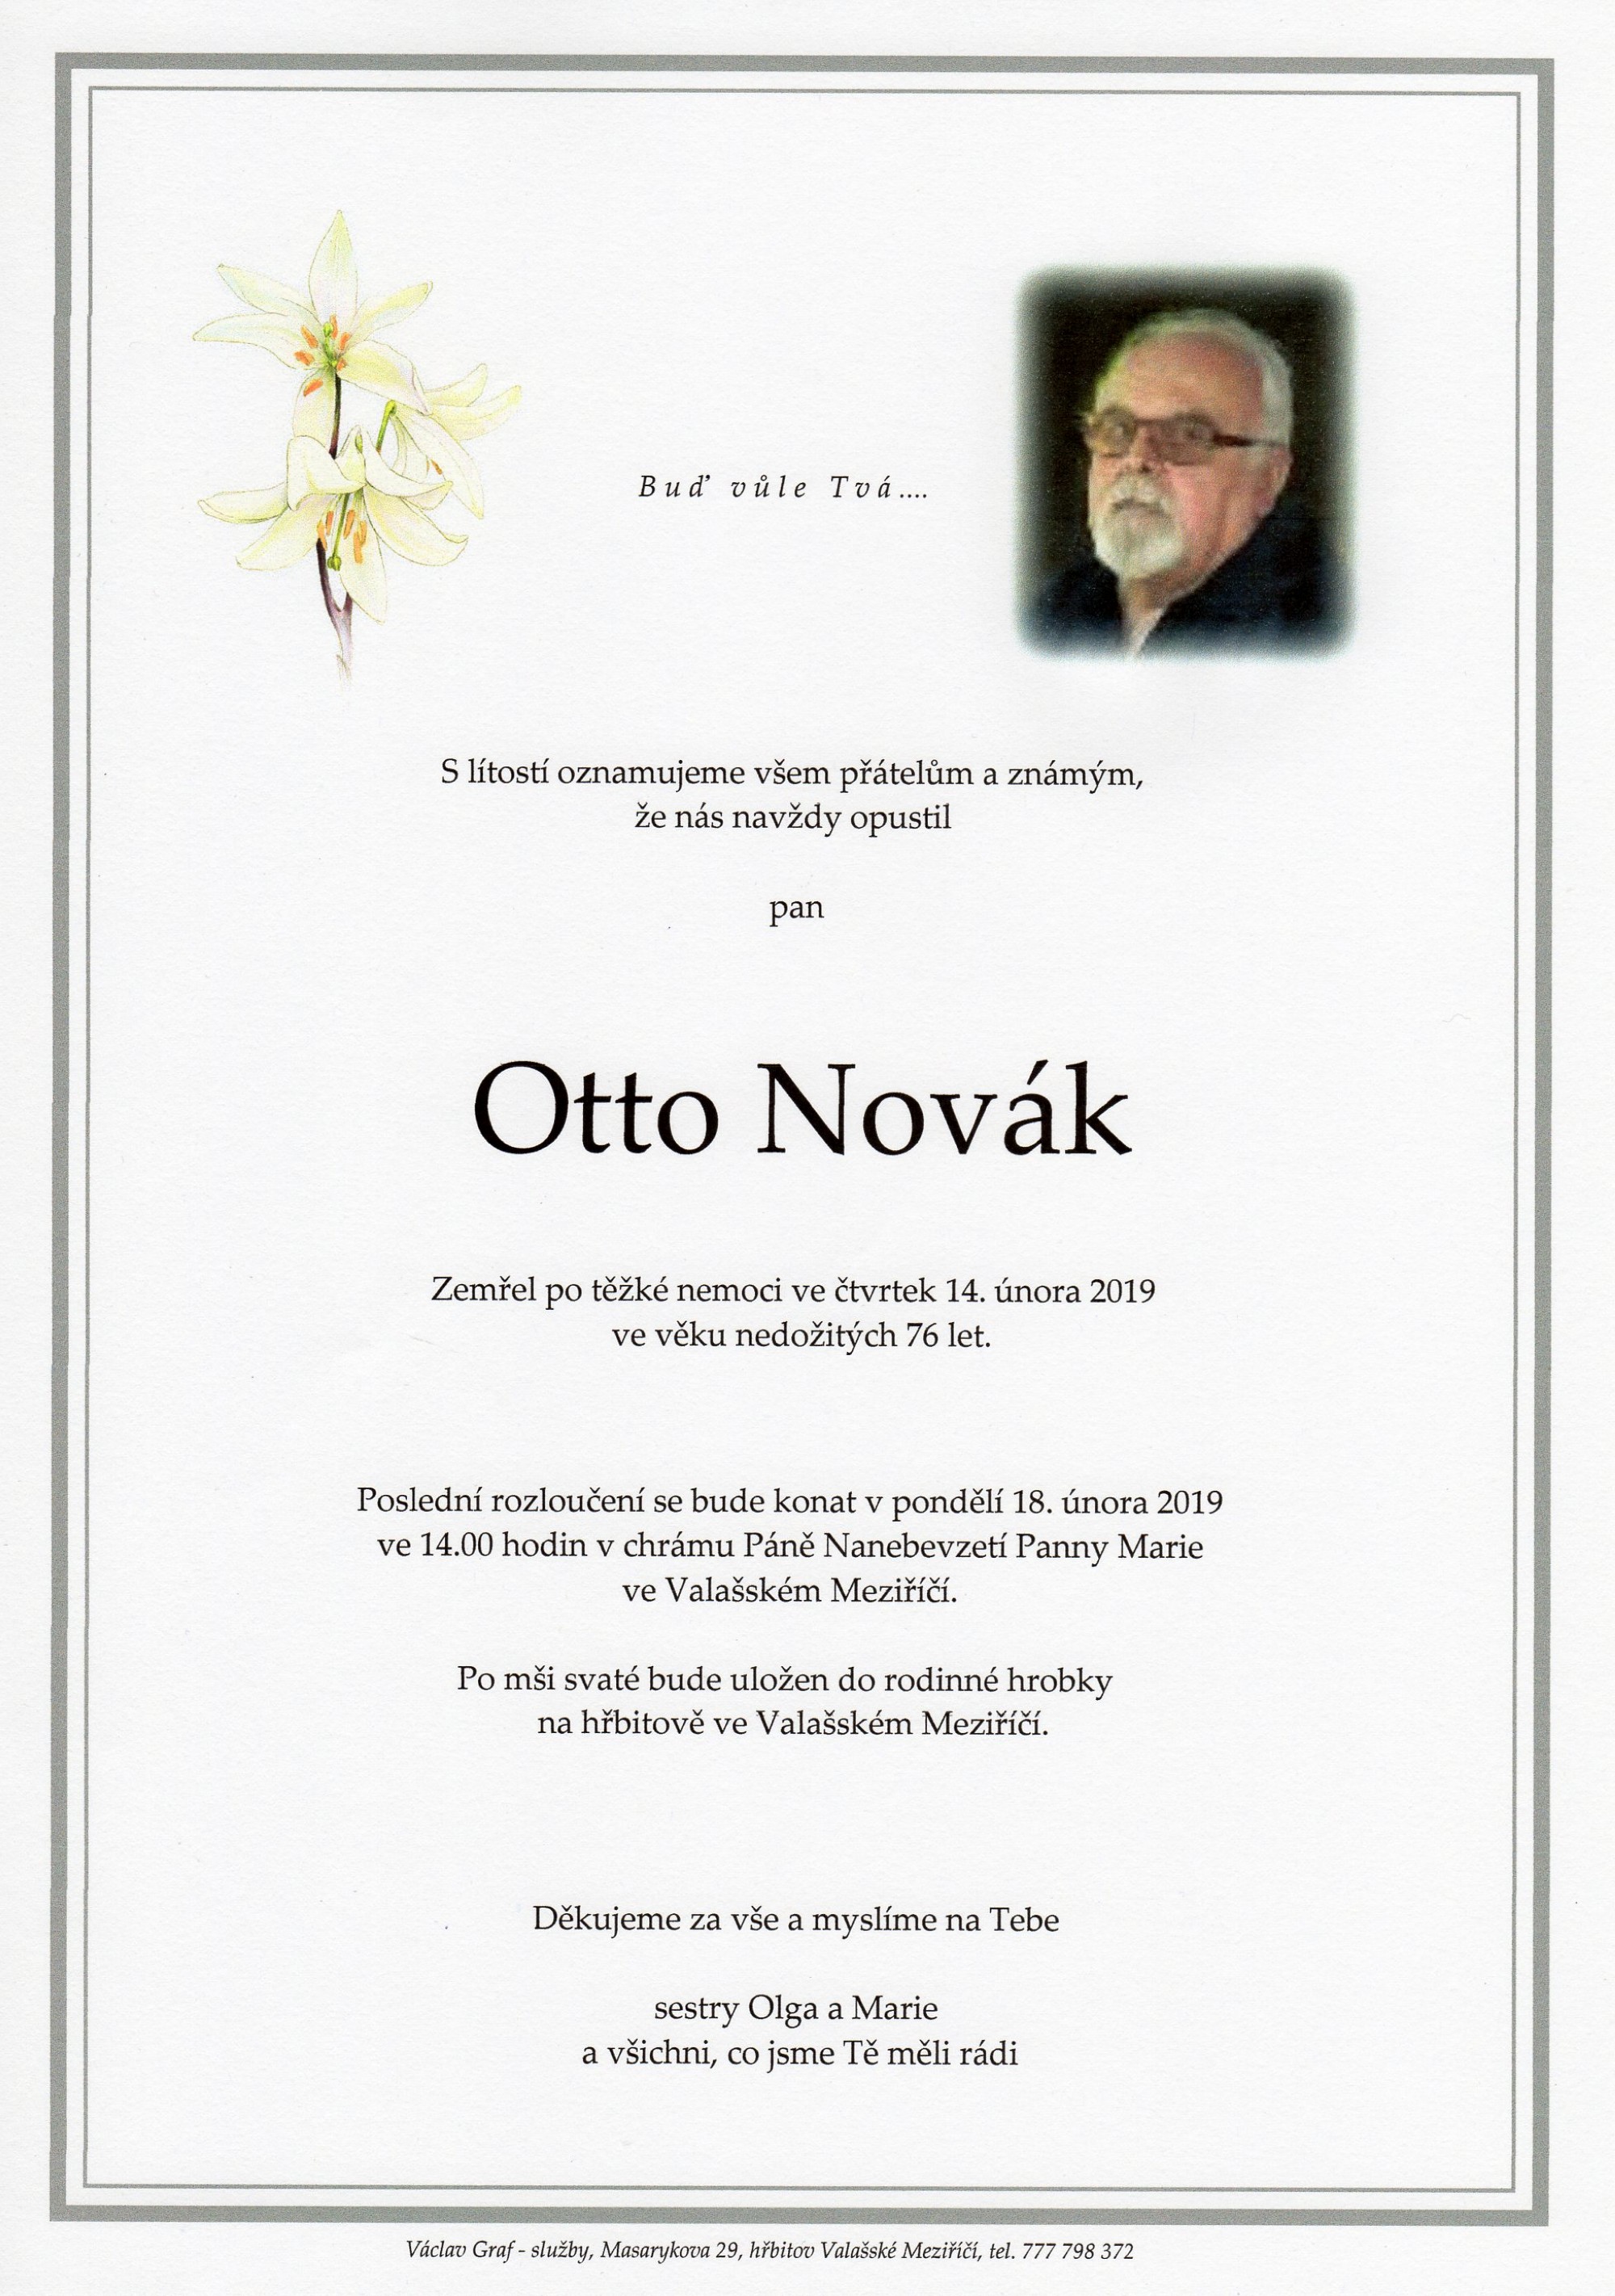 Otto Novák